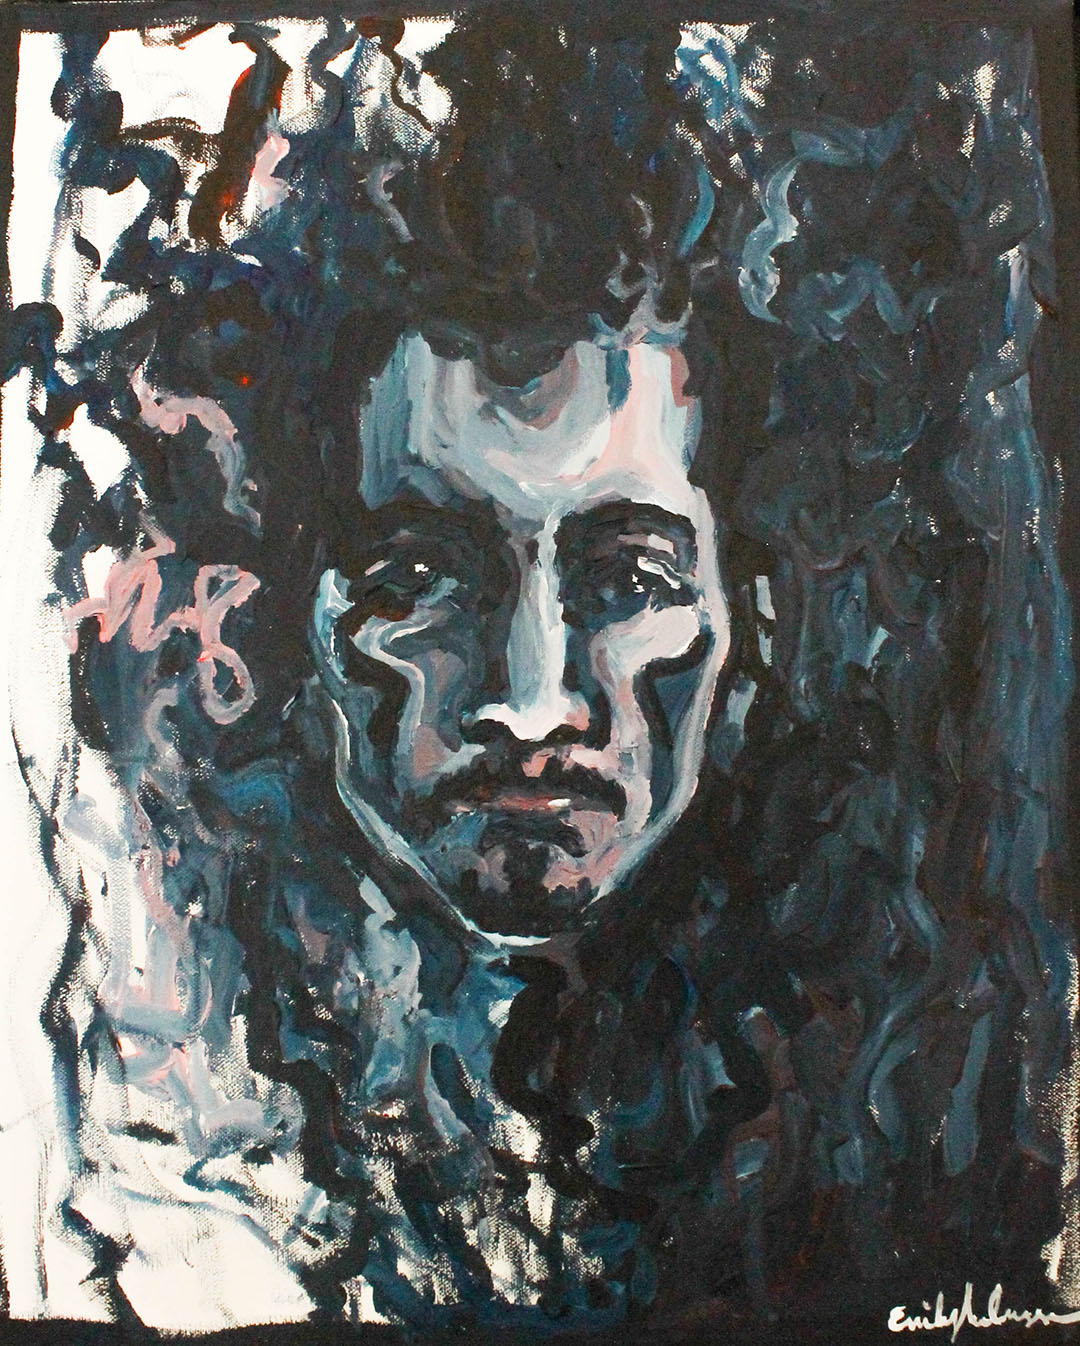 Sami, 2021. Acrylic on Canvas, 46cm x 56cm.